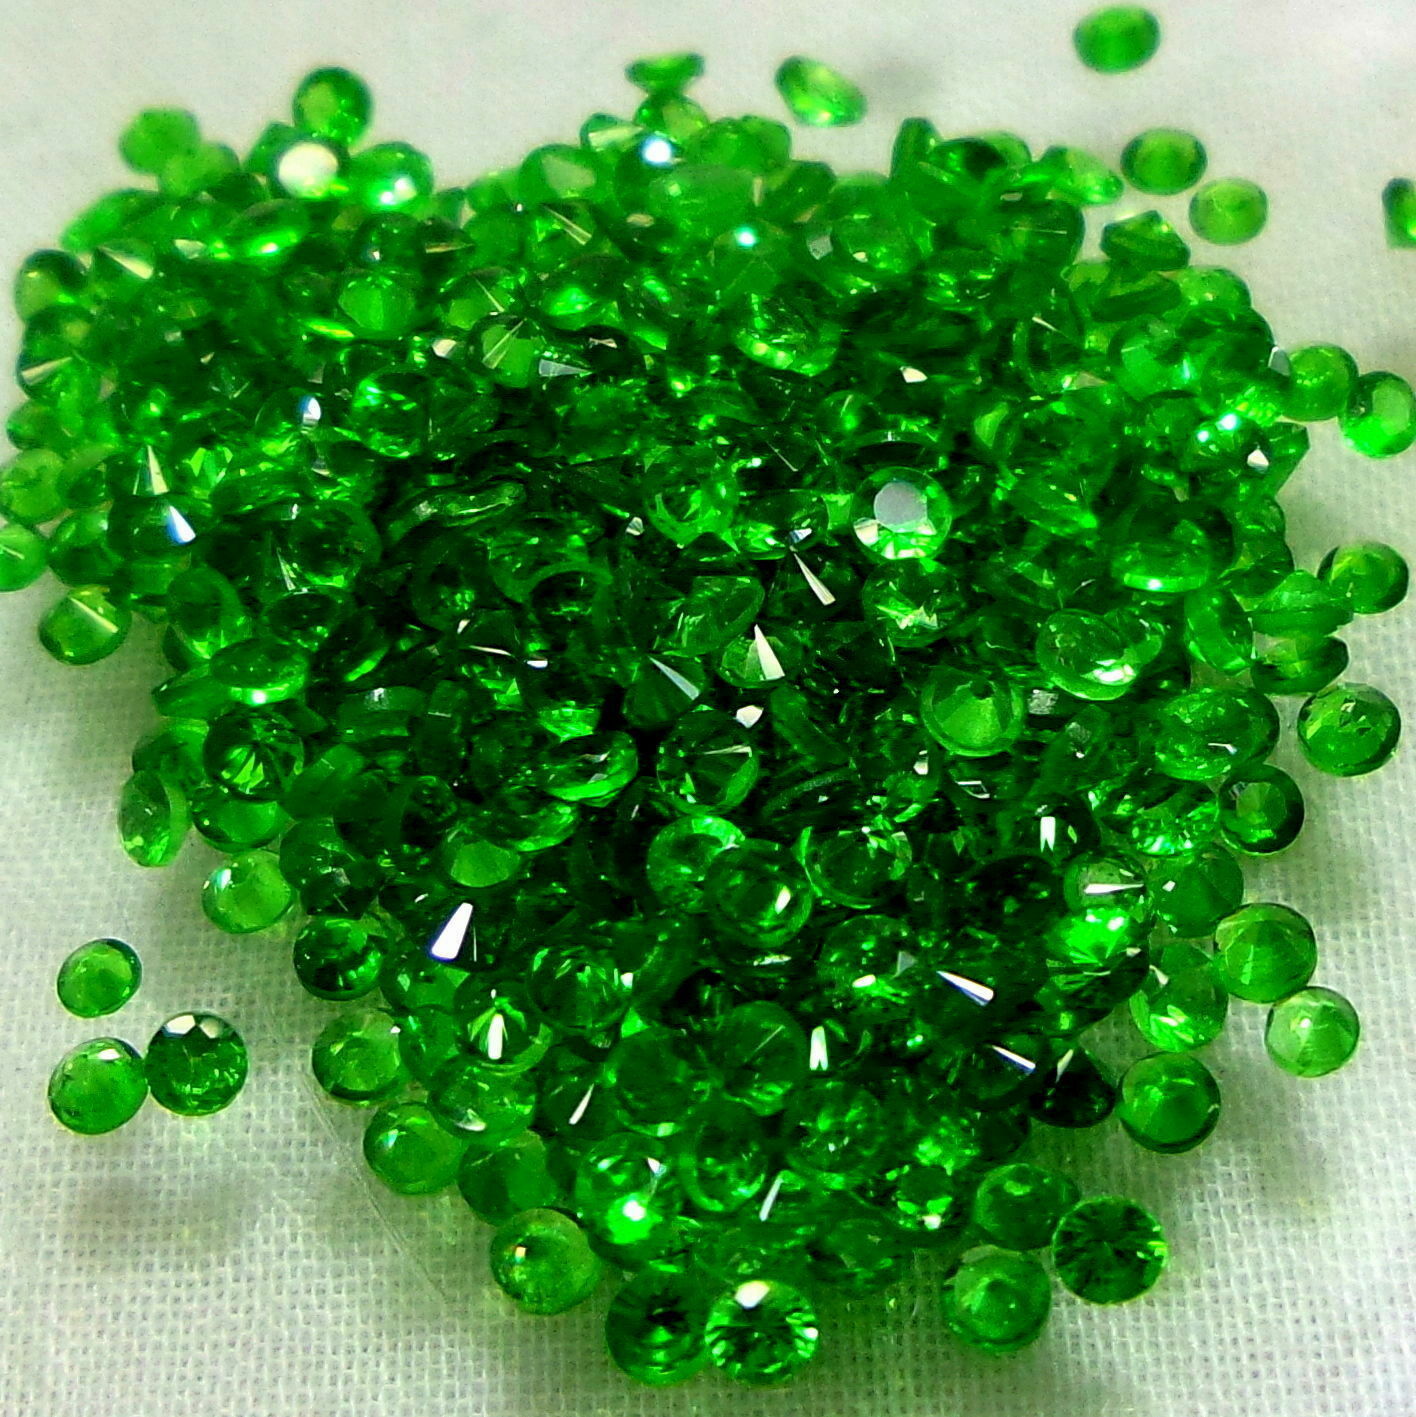 Natural Deep Emerald Green Tsavorite Garnet Diamond Cut All Calibrated Size Gems